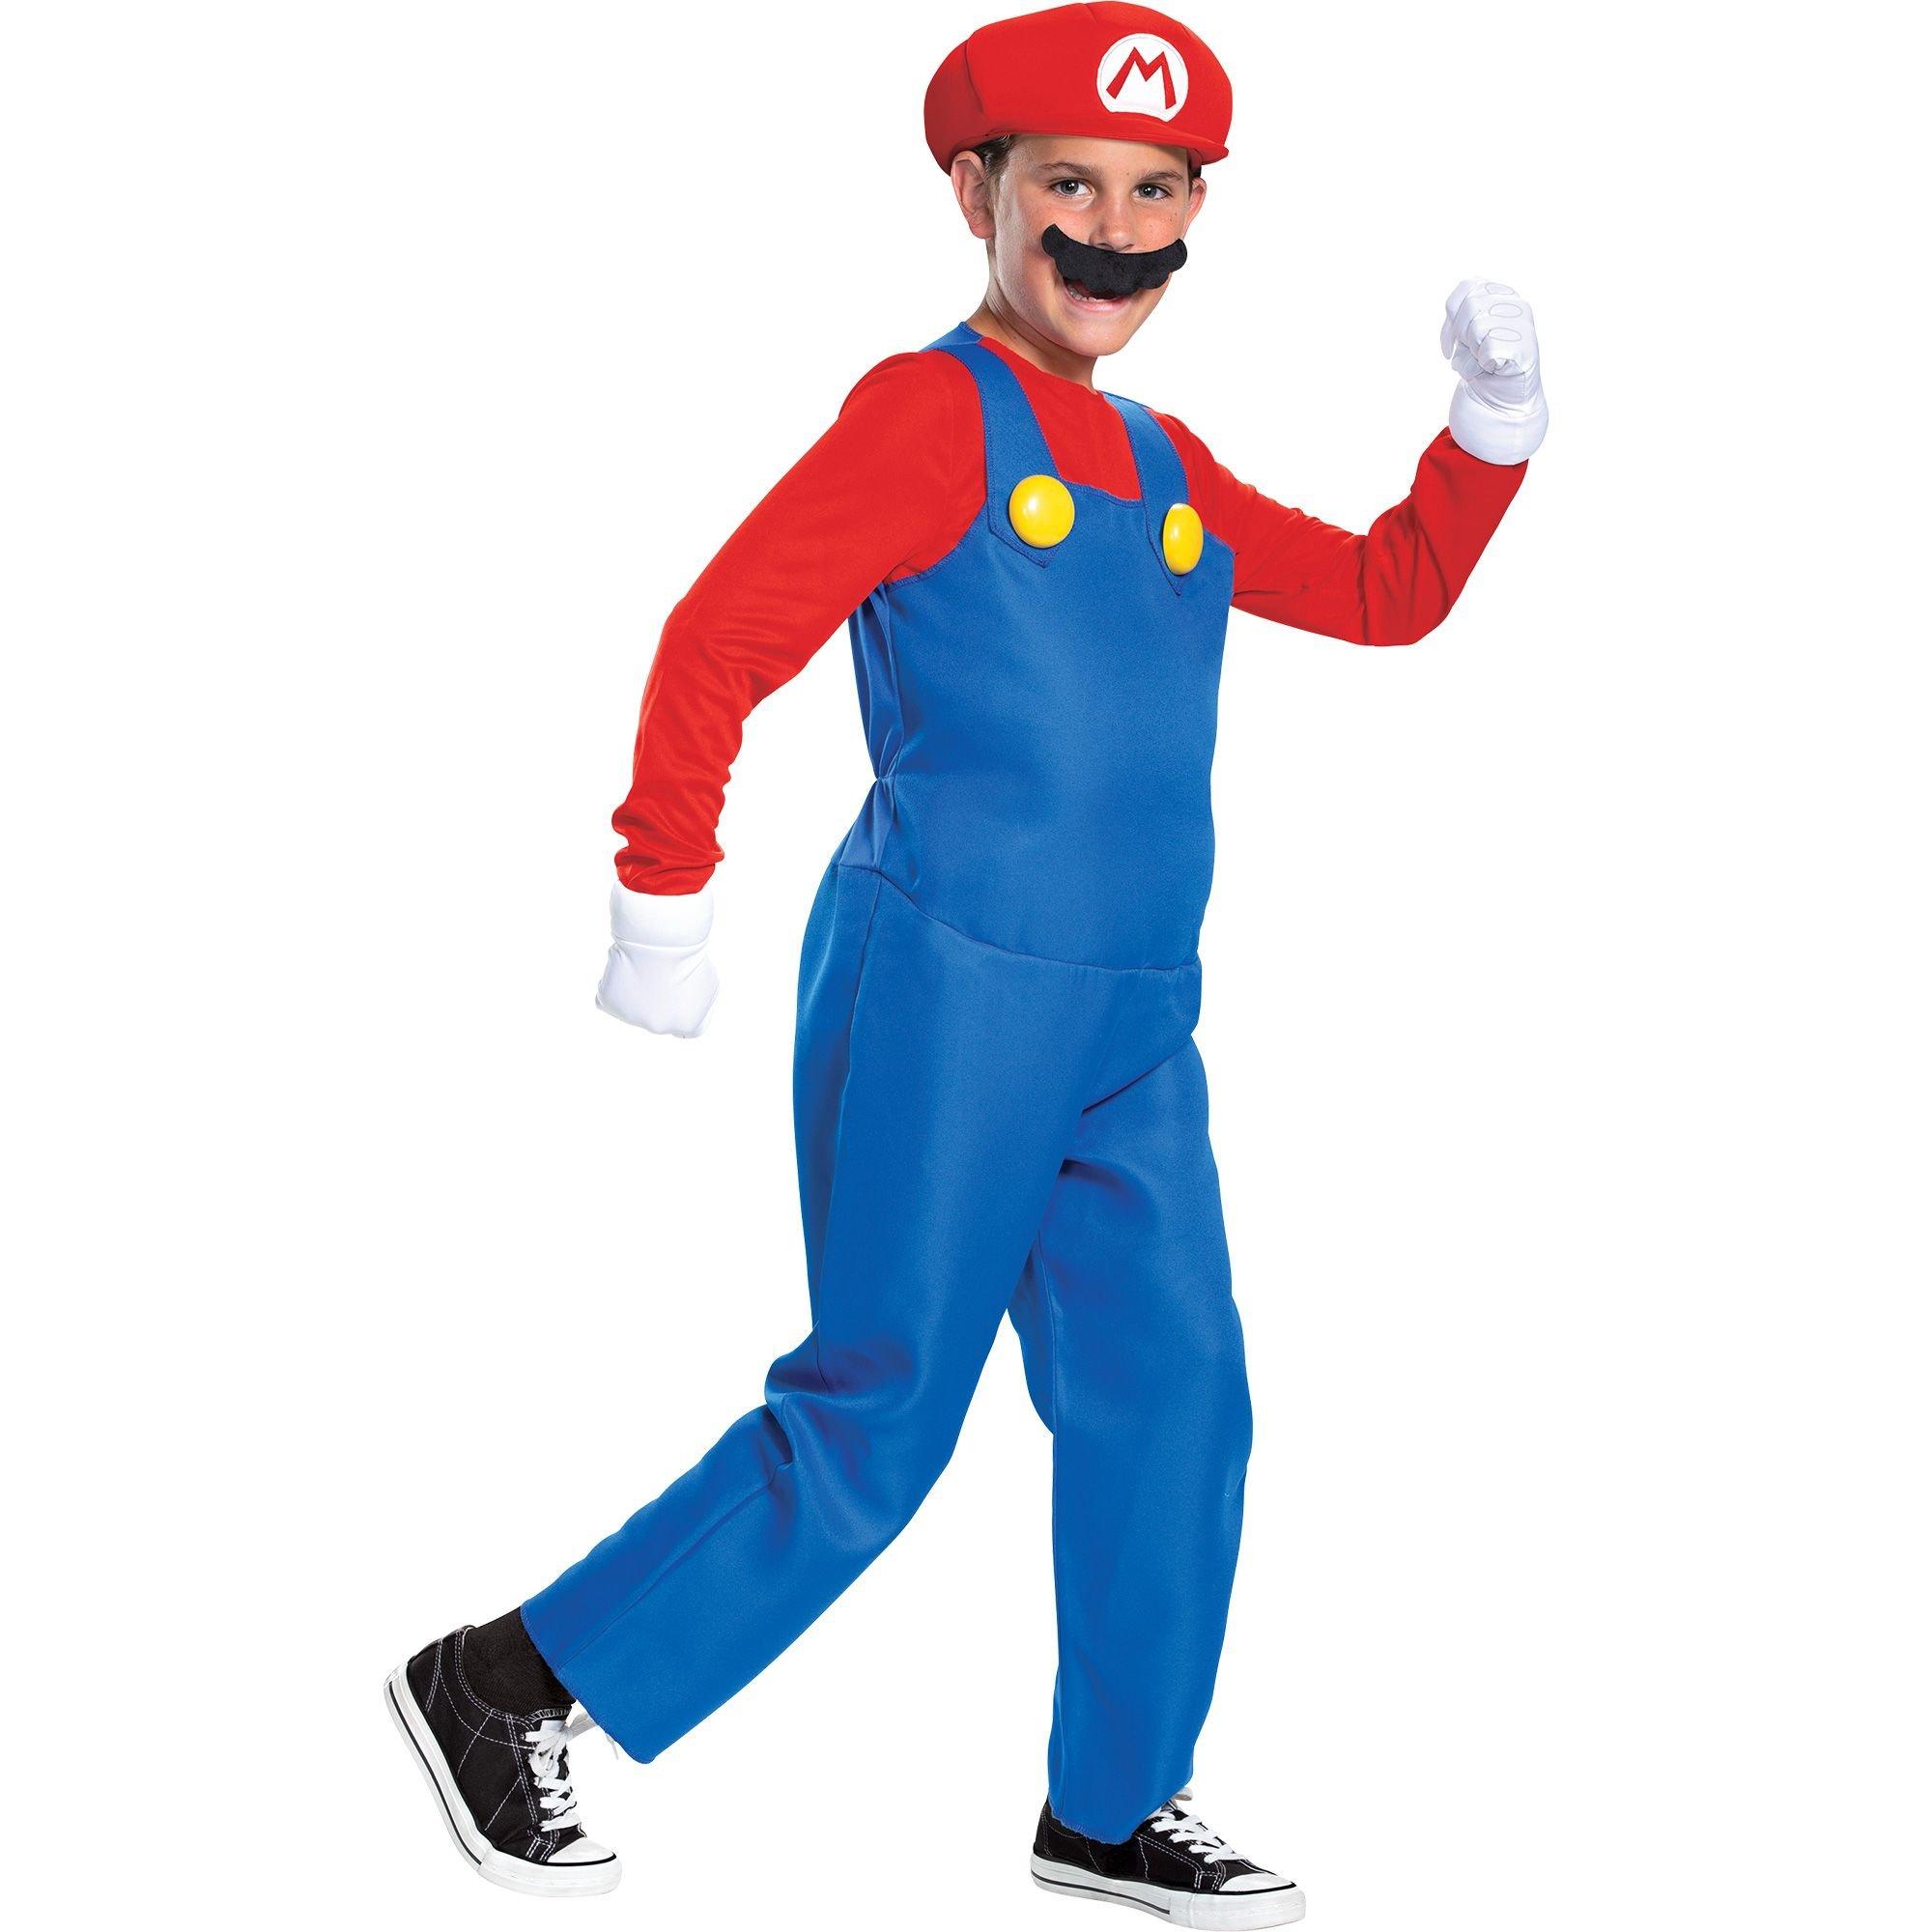 Mario & Luigi Costumes - Super Mario Costumes